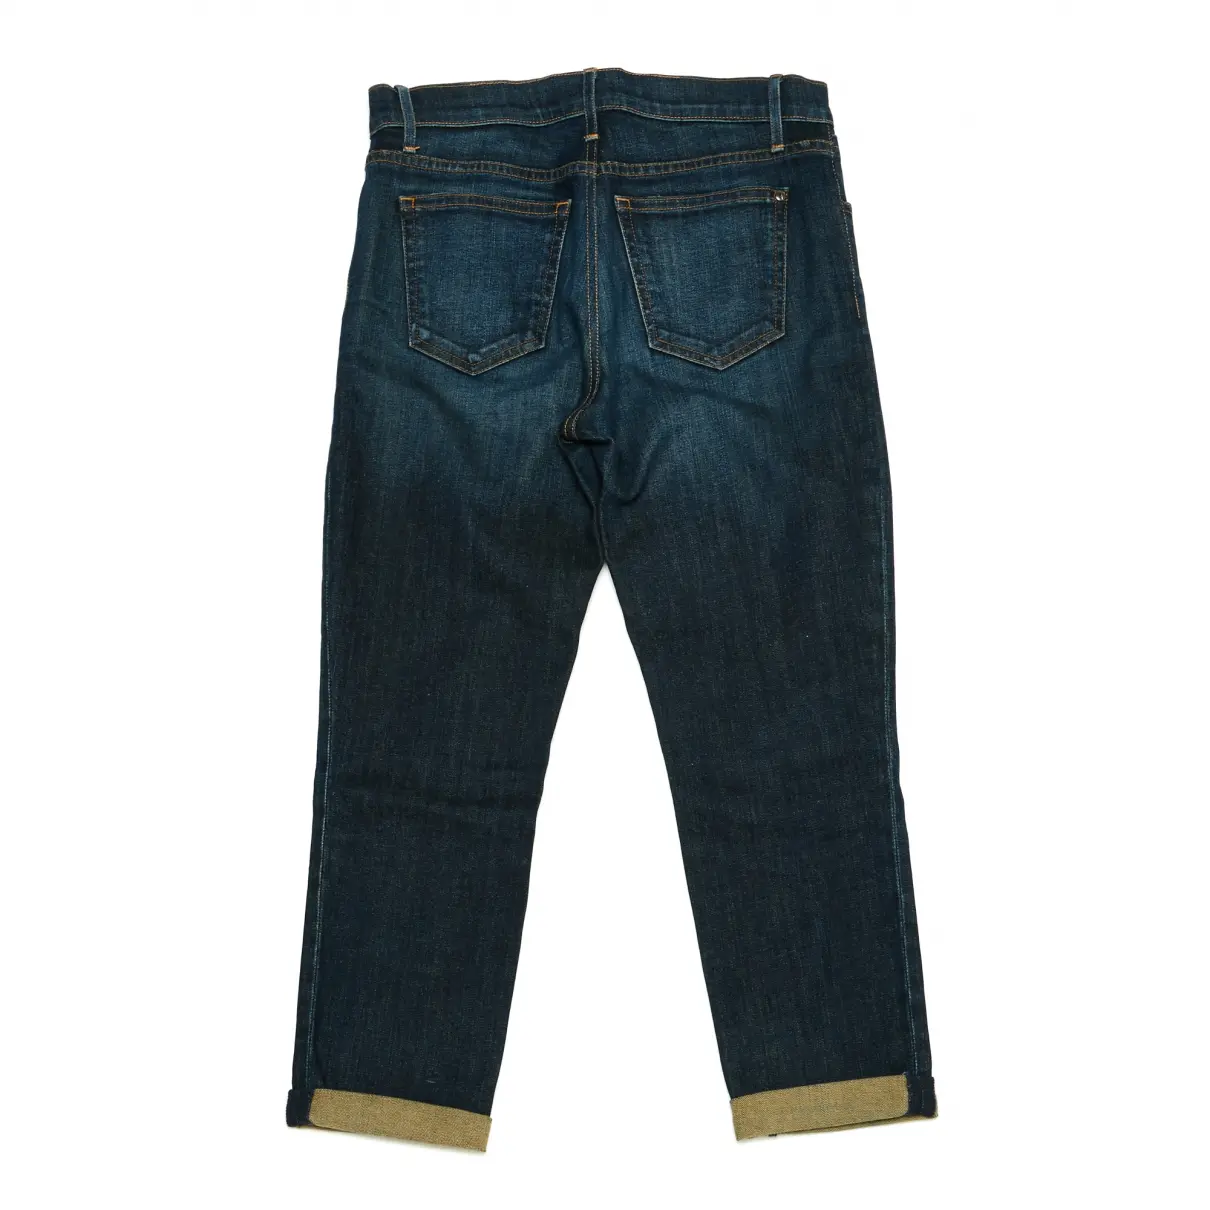 Buy Koral Slim jeans online